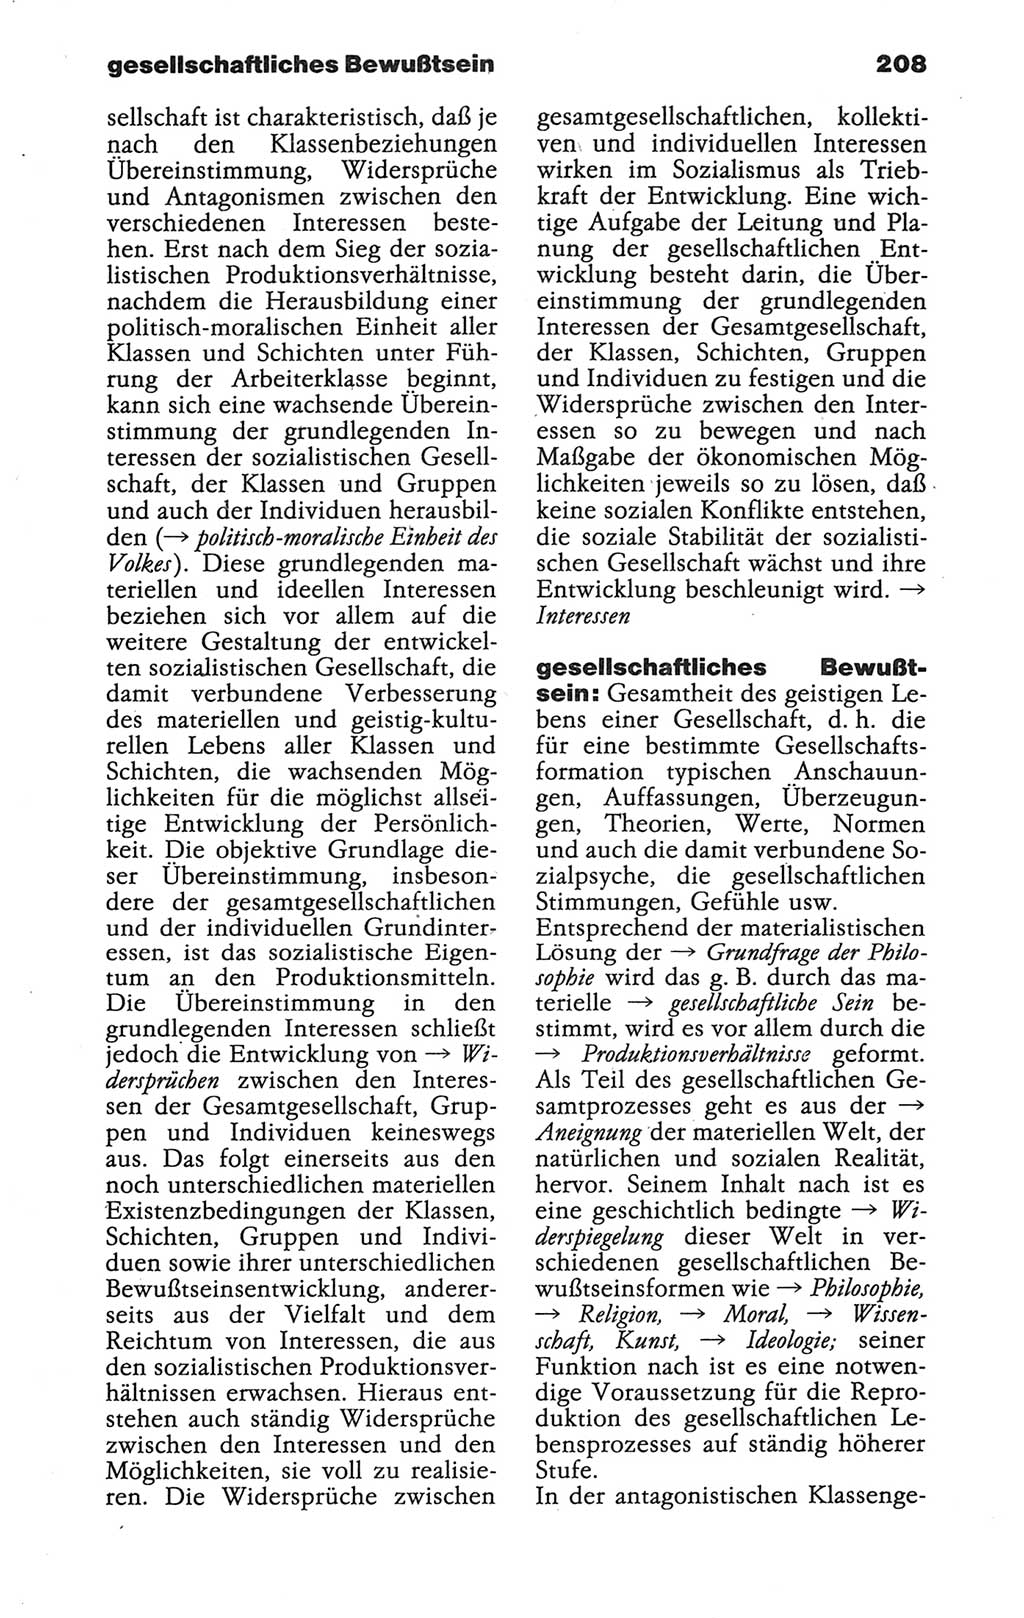 Wörterbuch der marxistisch-leninistischen Philosophie [Deutsche Demokratische Republik (DDR)] 1986, Seite 208 (Wb. ML Phil. DDR 1986, S. 208)